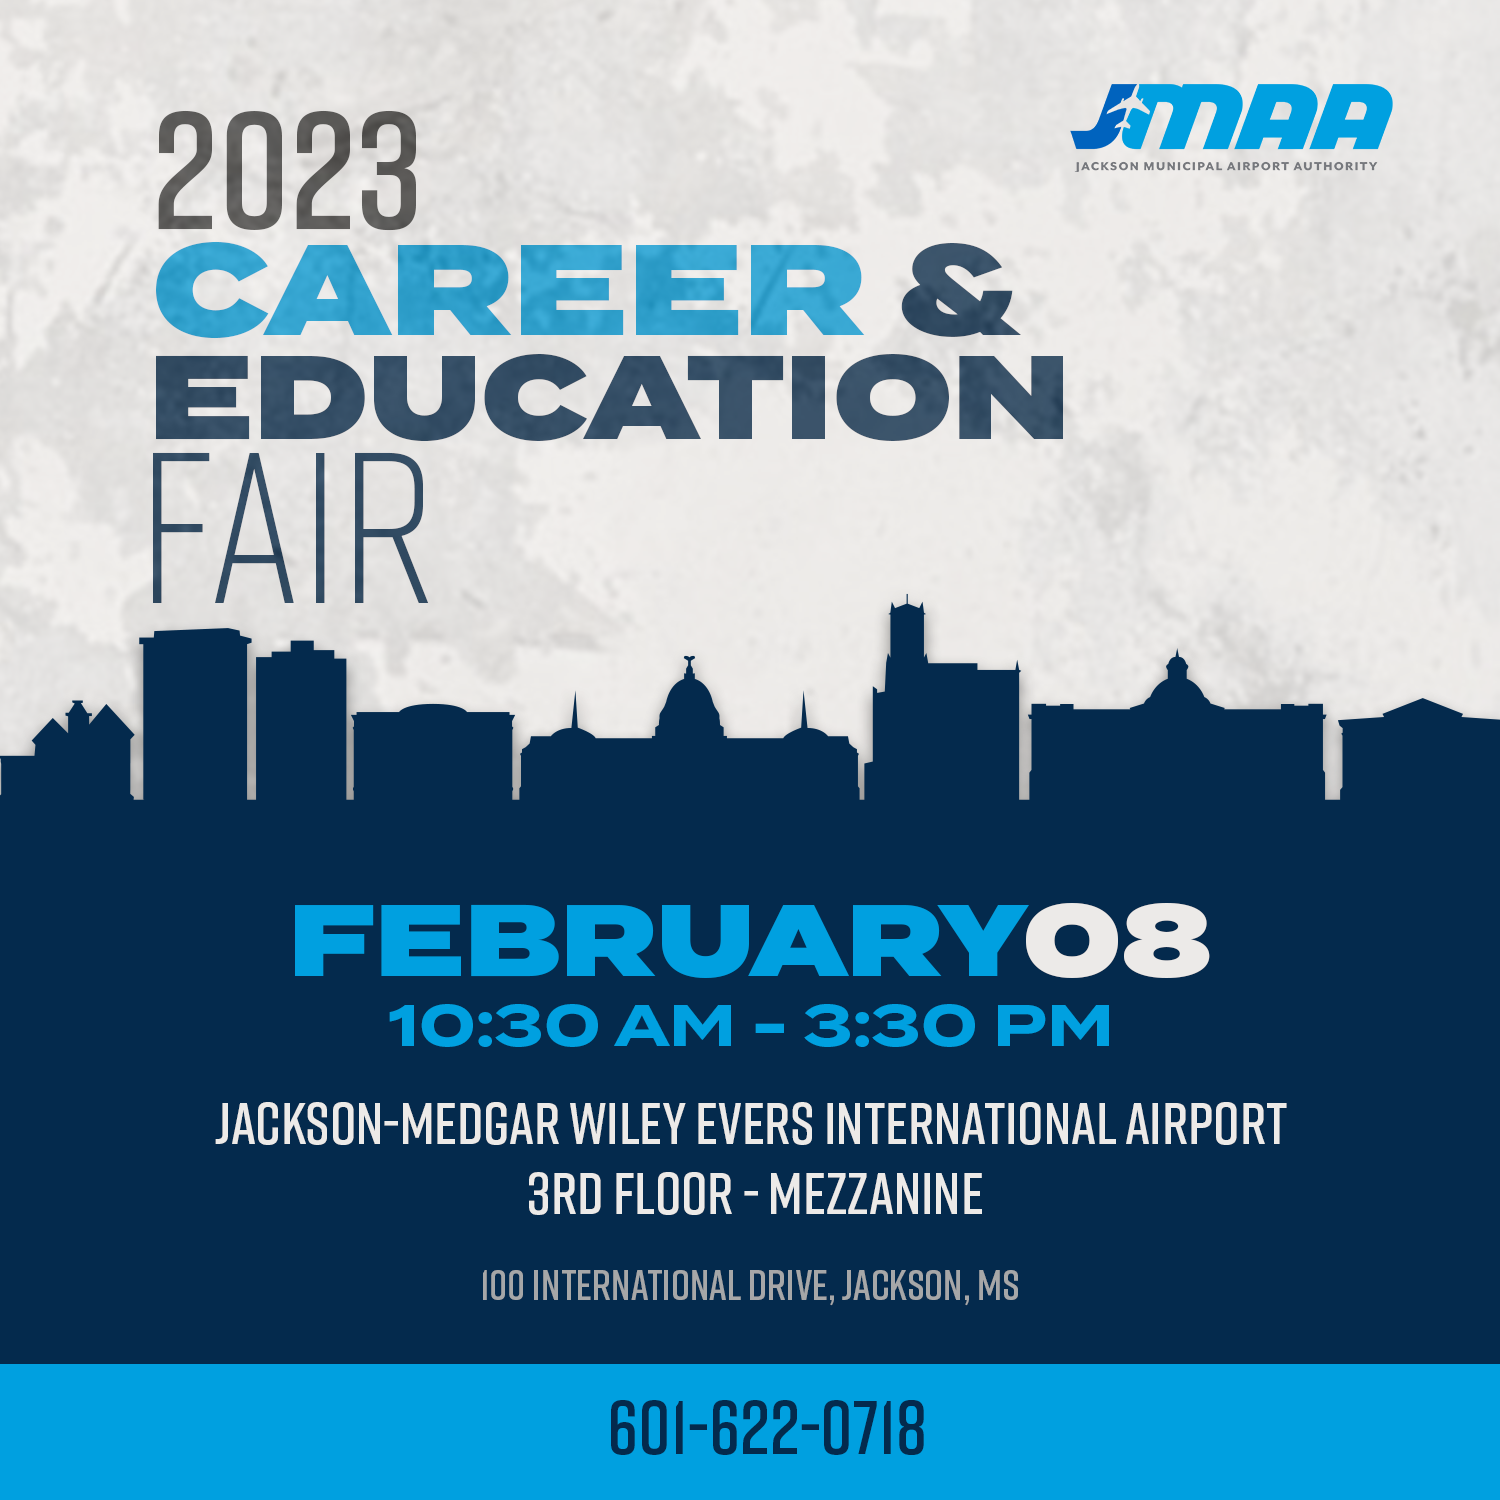 JMAA 2023 Career & Education Fair